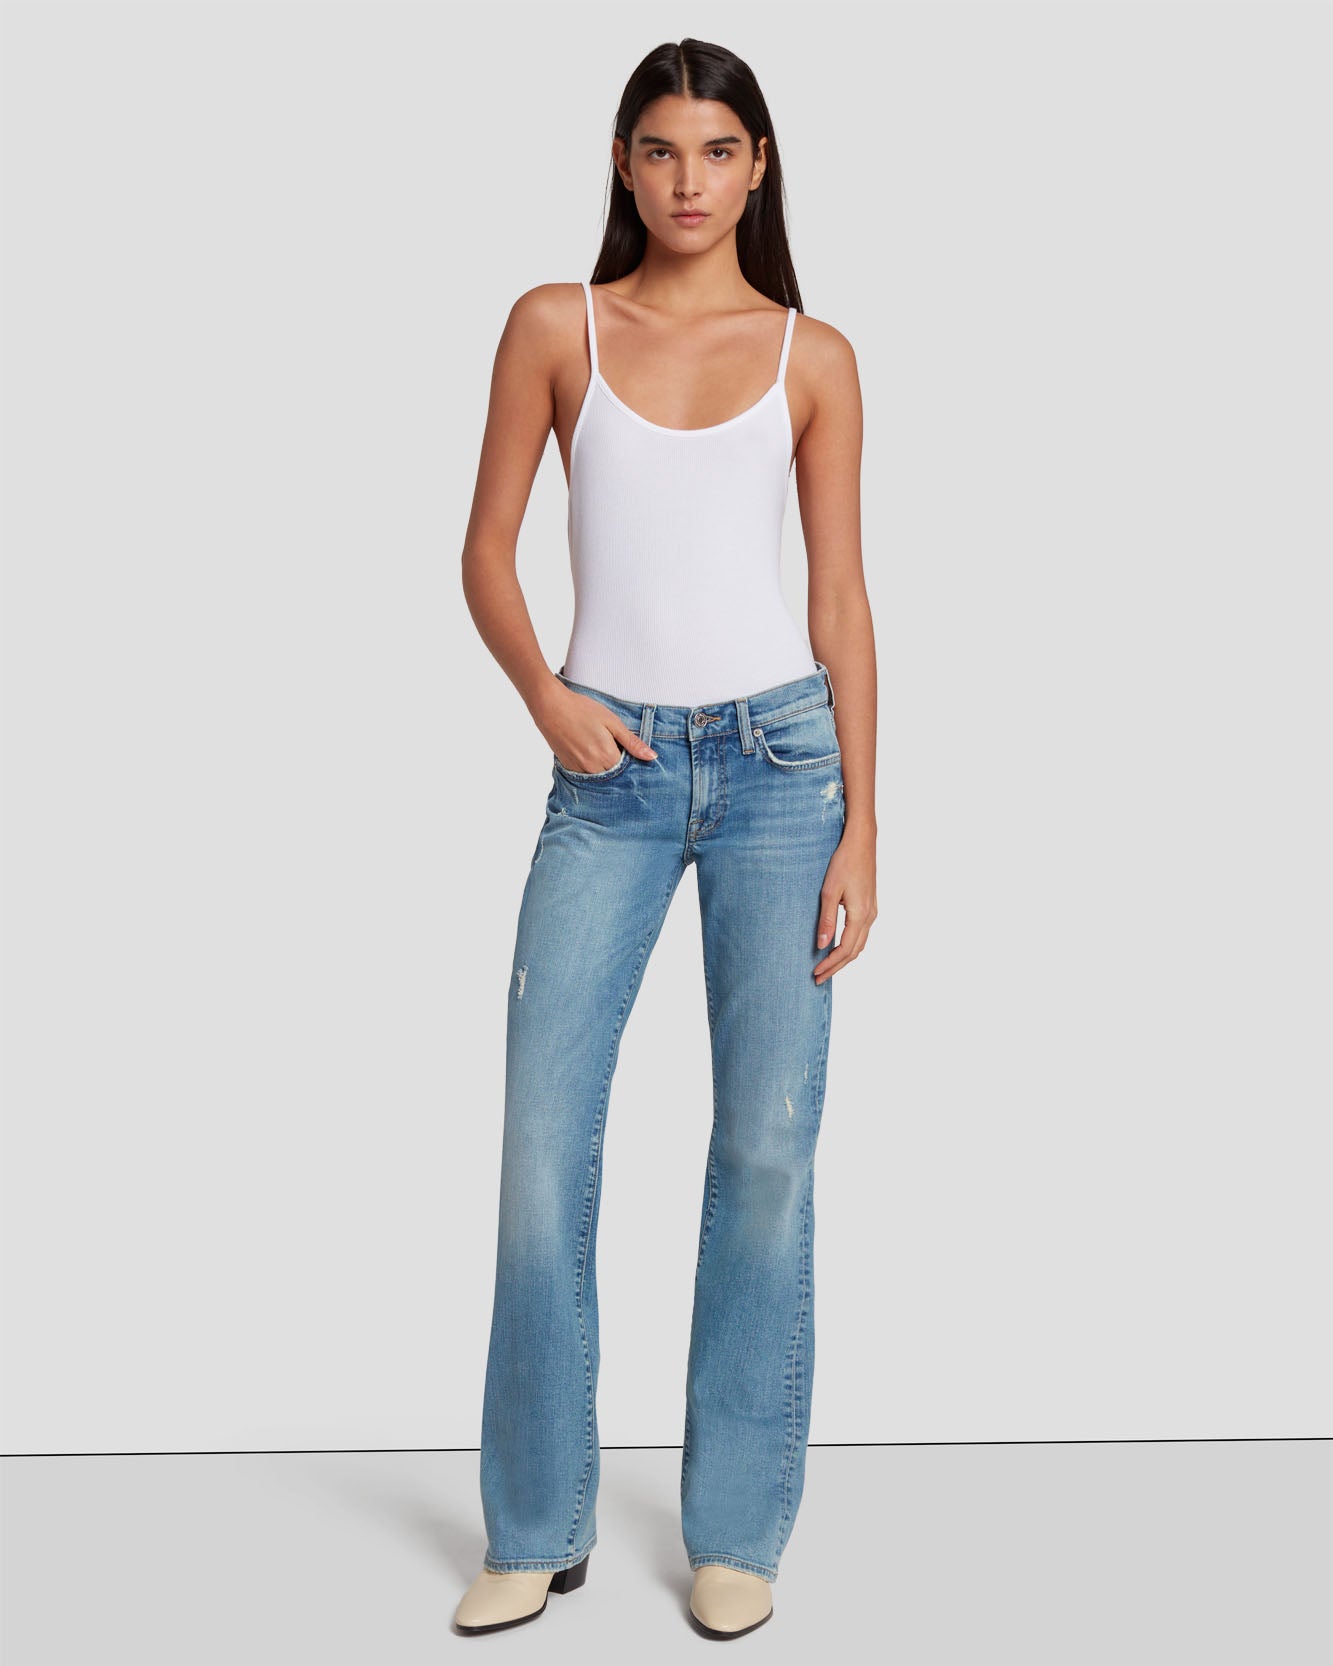 Buy Men Light Blue Cotton Stretch Slim Fit Jeans @ 3,499